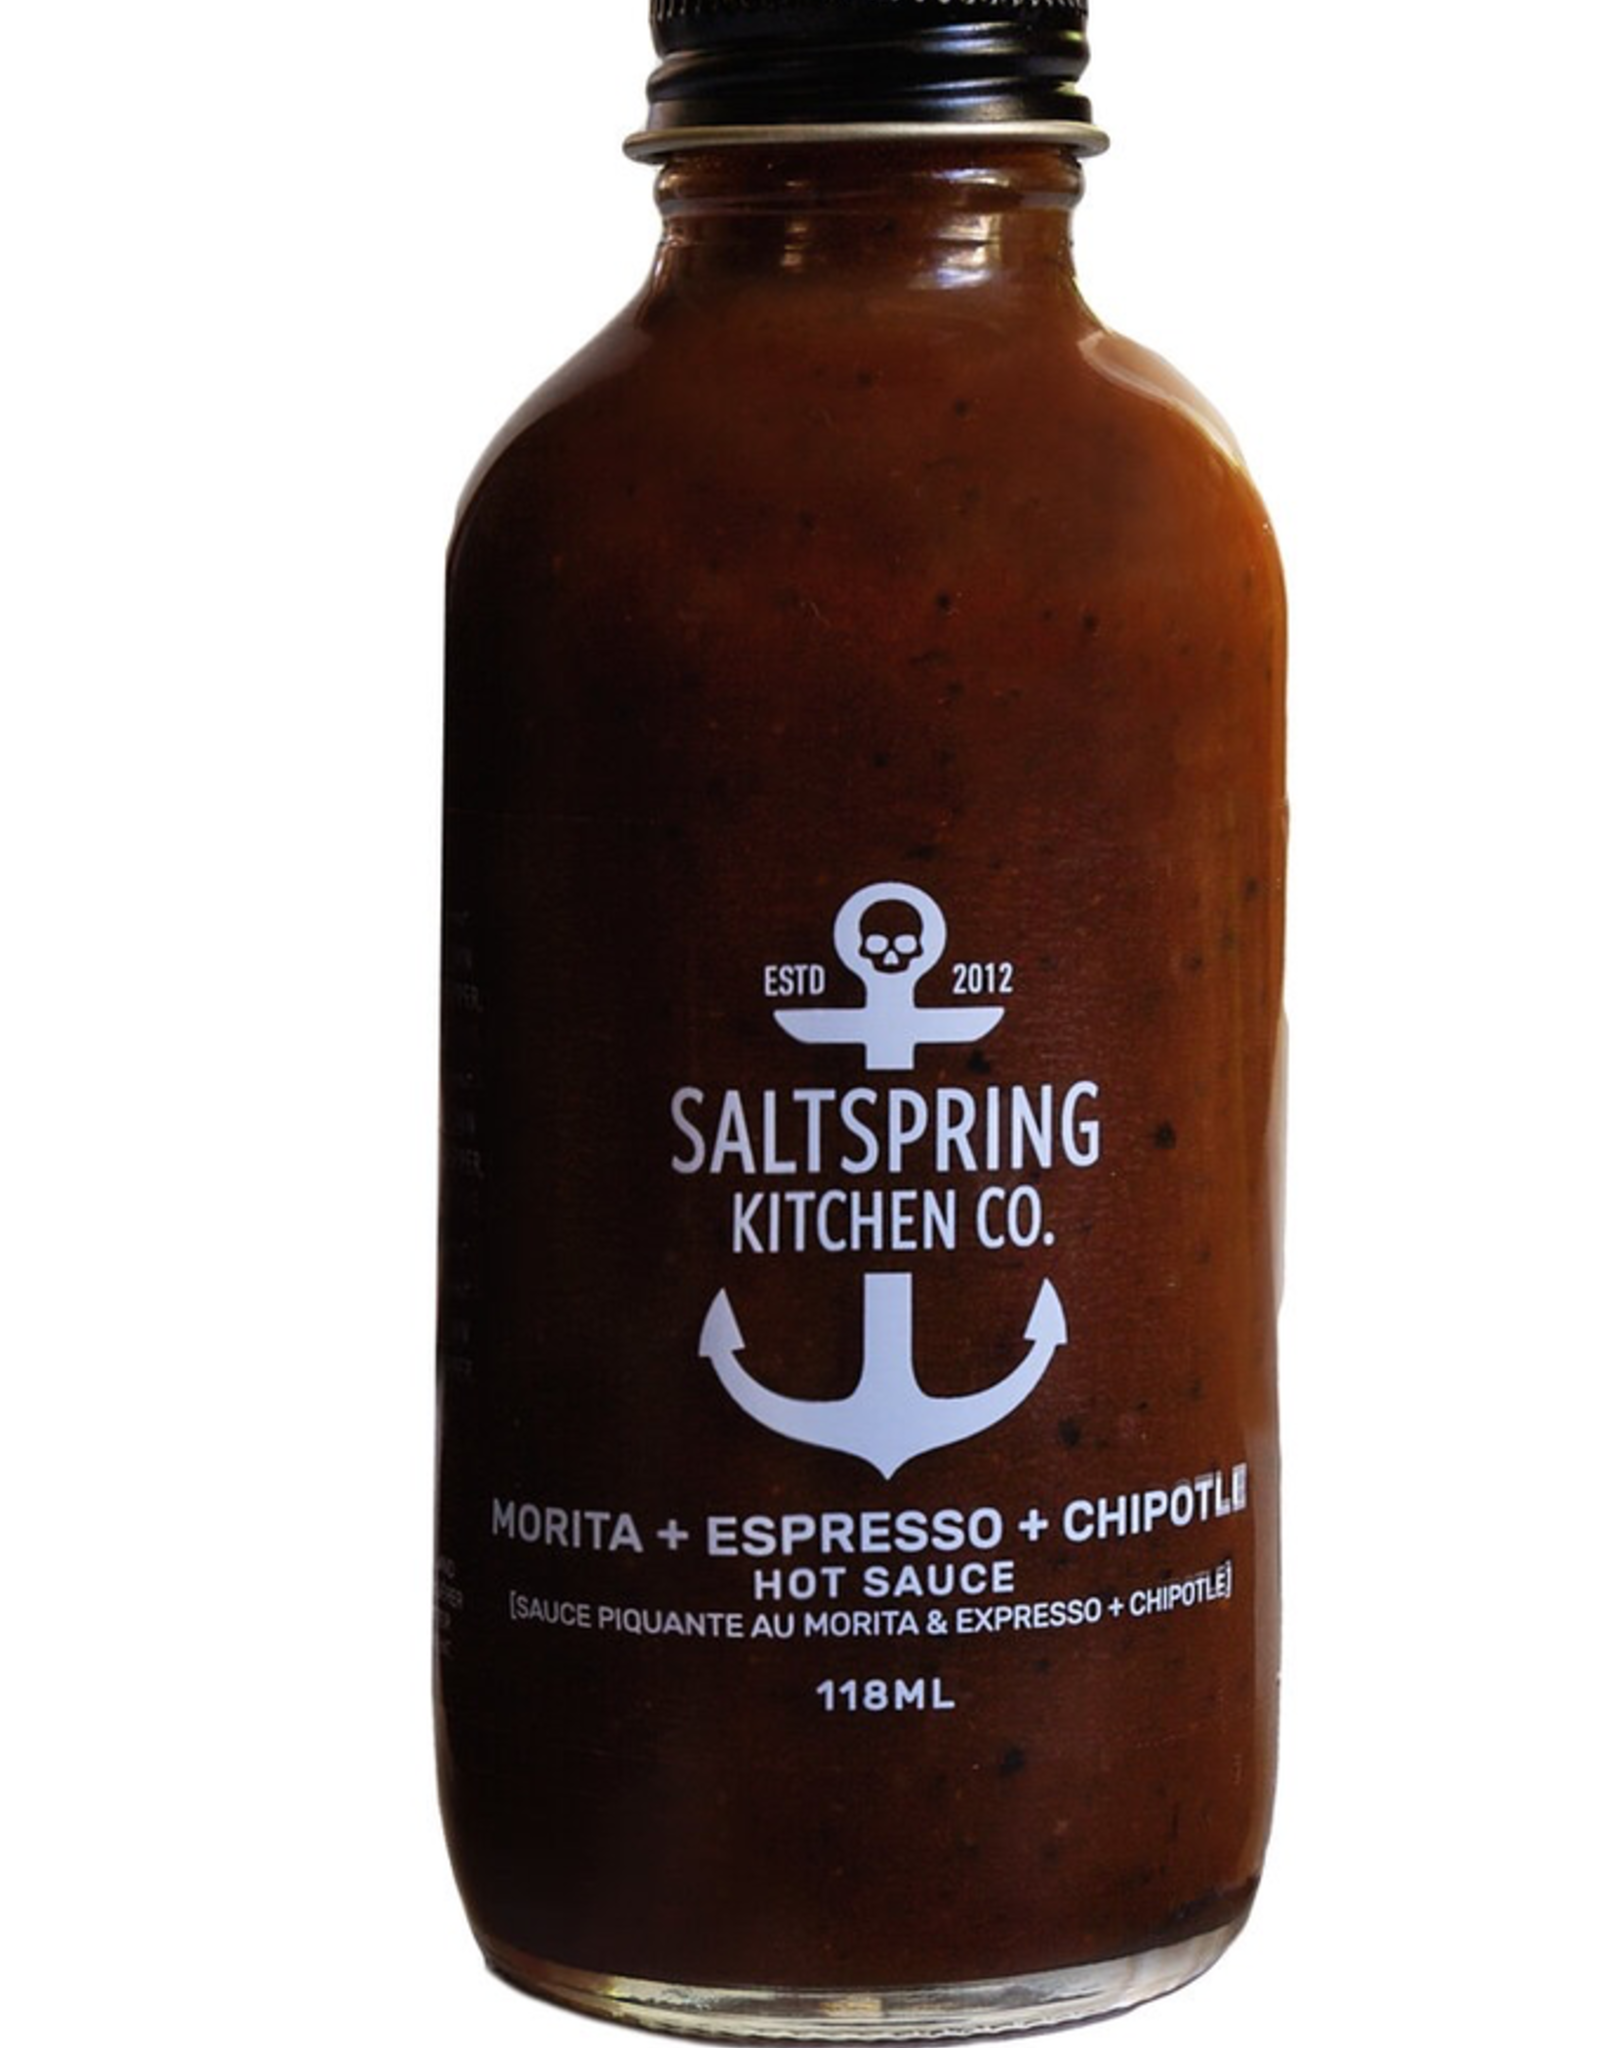 Morita + Espresso + Chipotle Hot Sauce